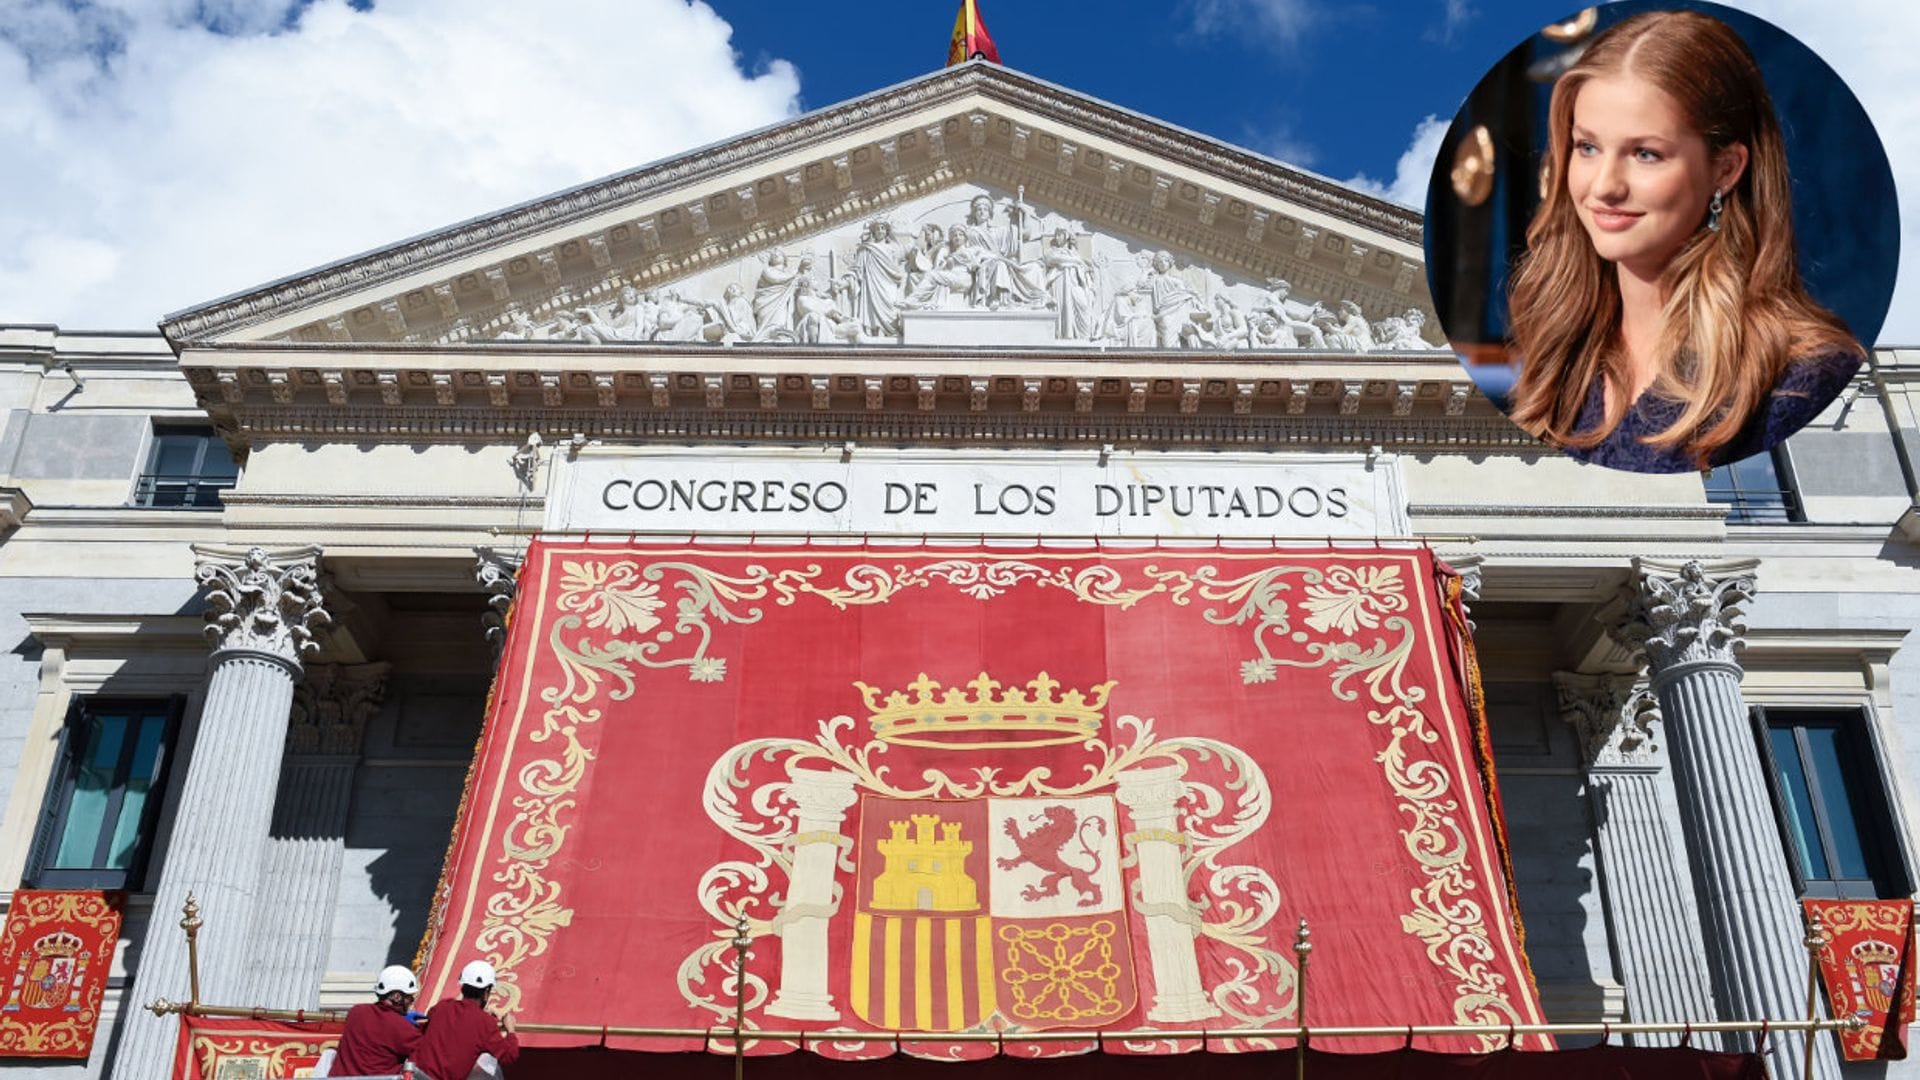 Los escenarios clave en la jura de la Constitución de la Princesa de Asturias